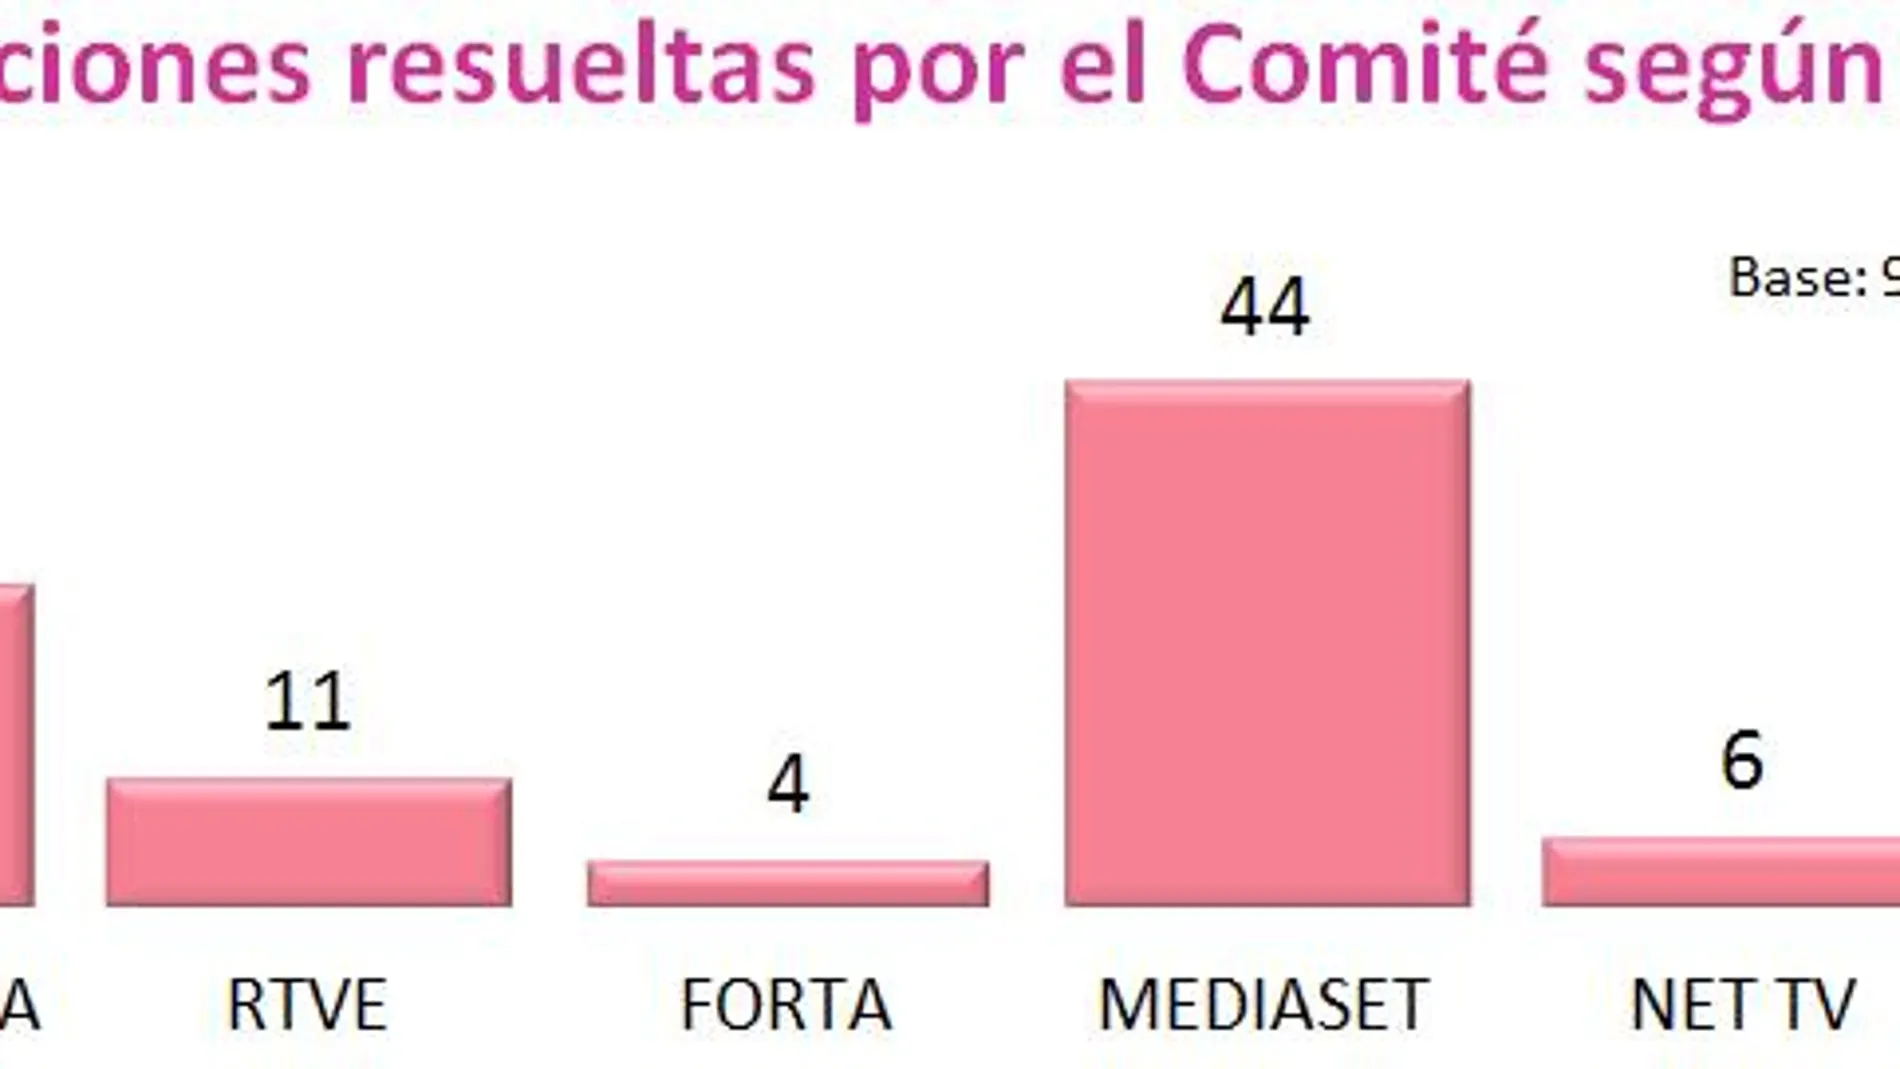 La mitad de las reclamaciones por contenidos inapropiados en televisión corresponden a programas de Mediaset